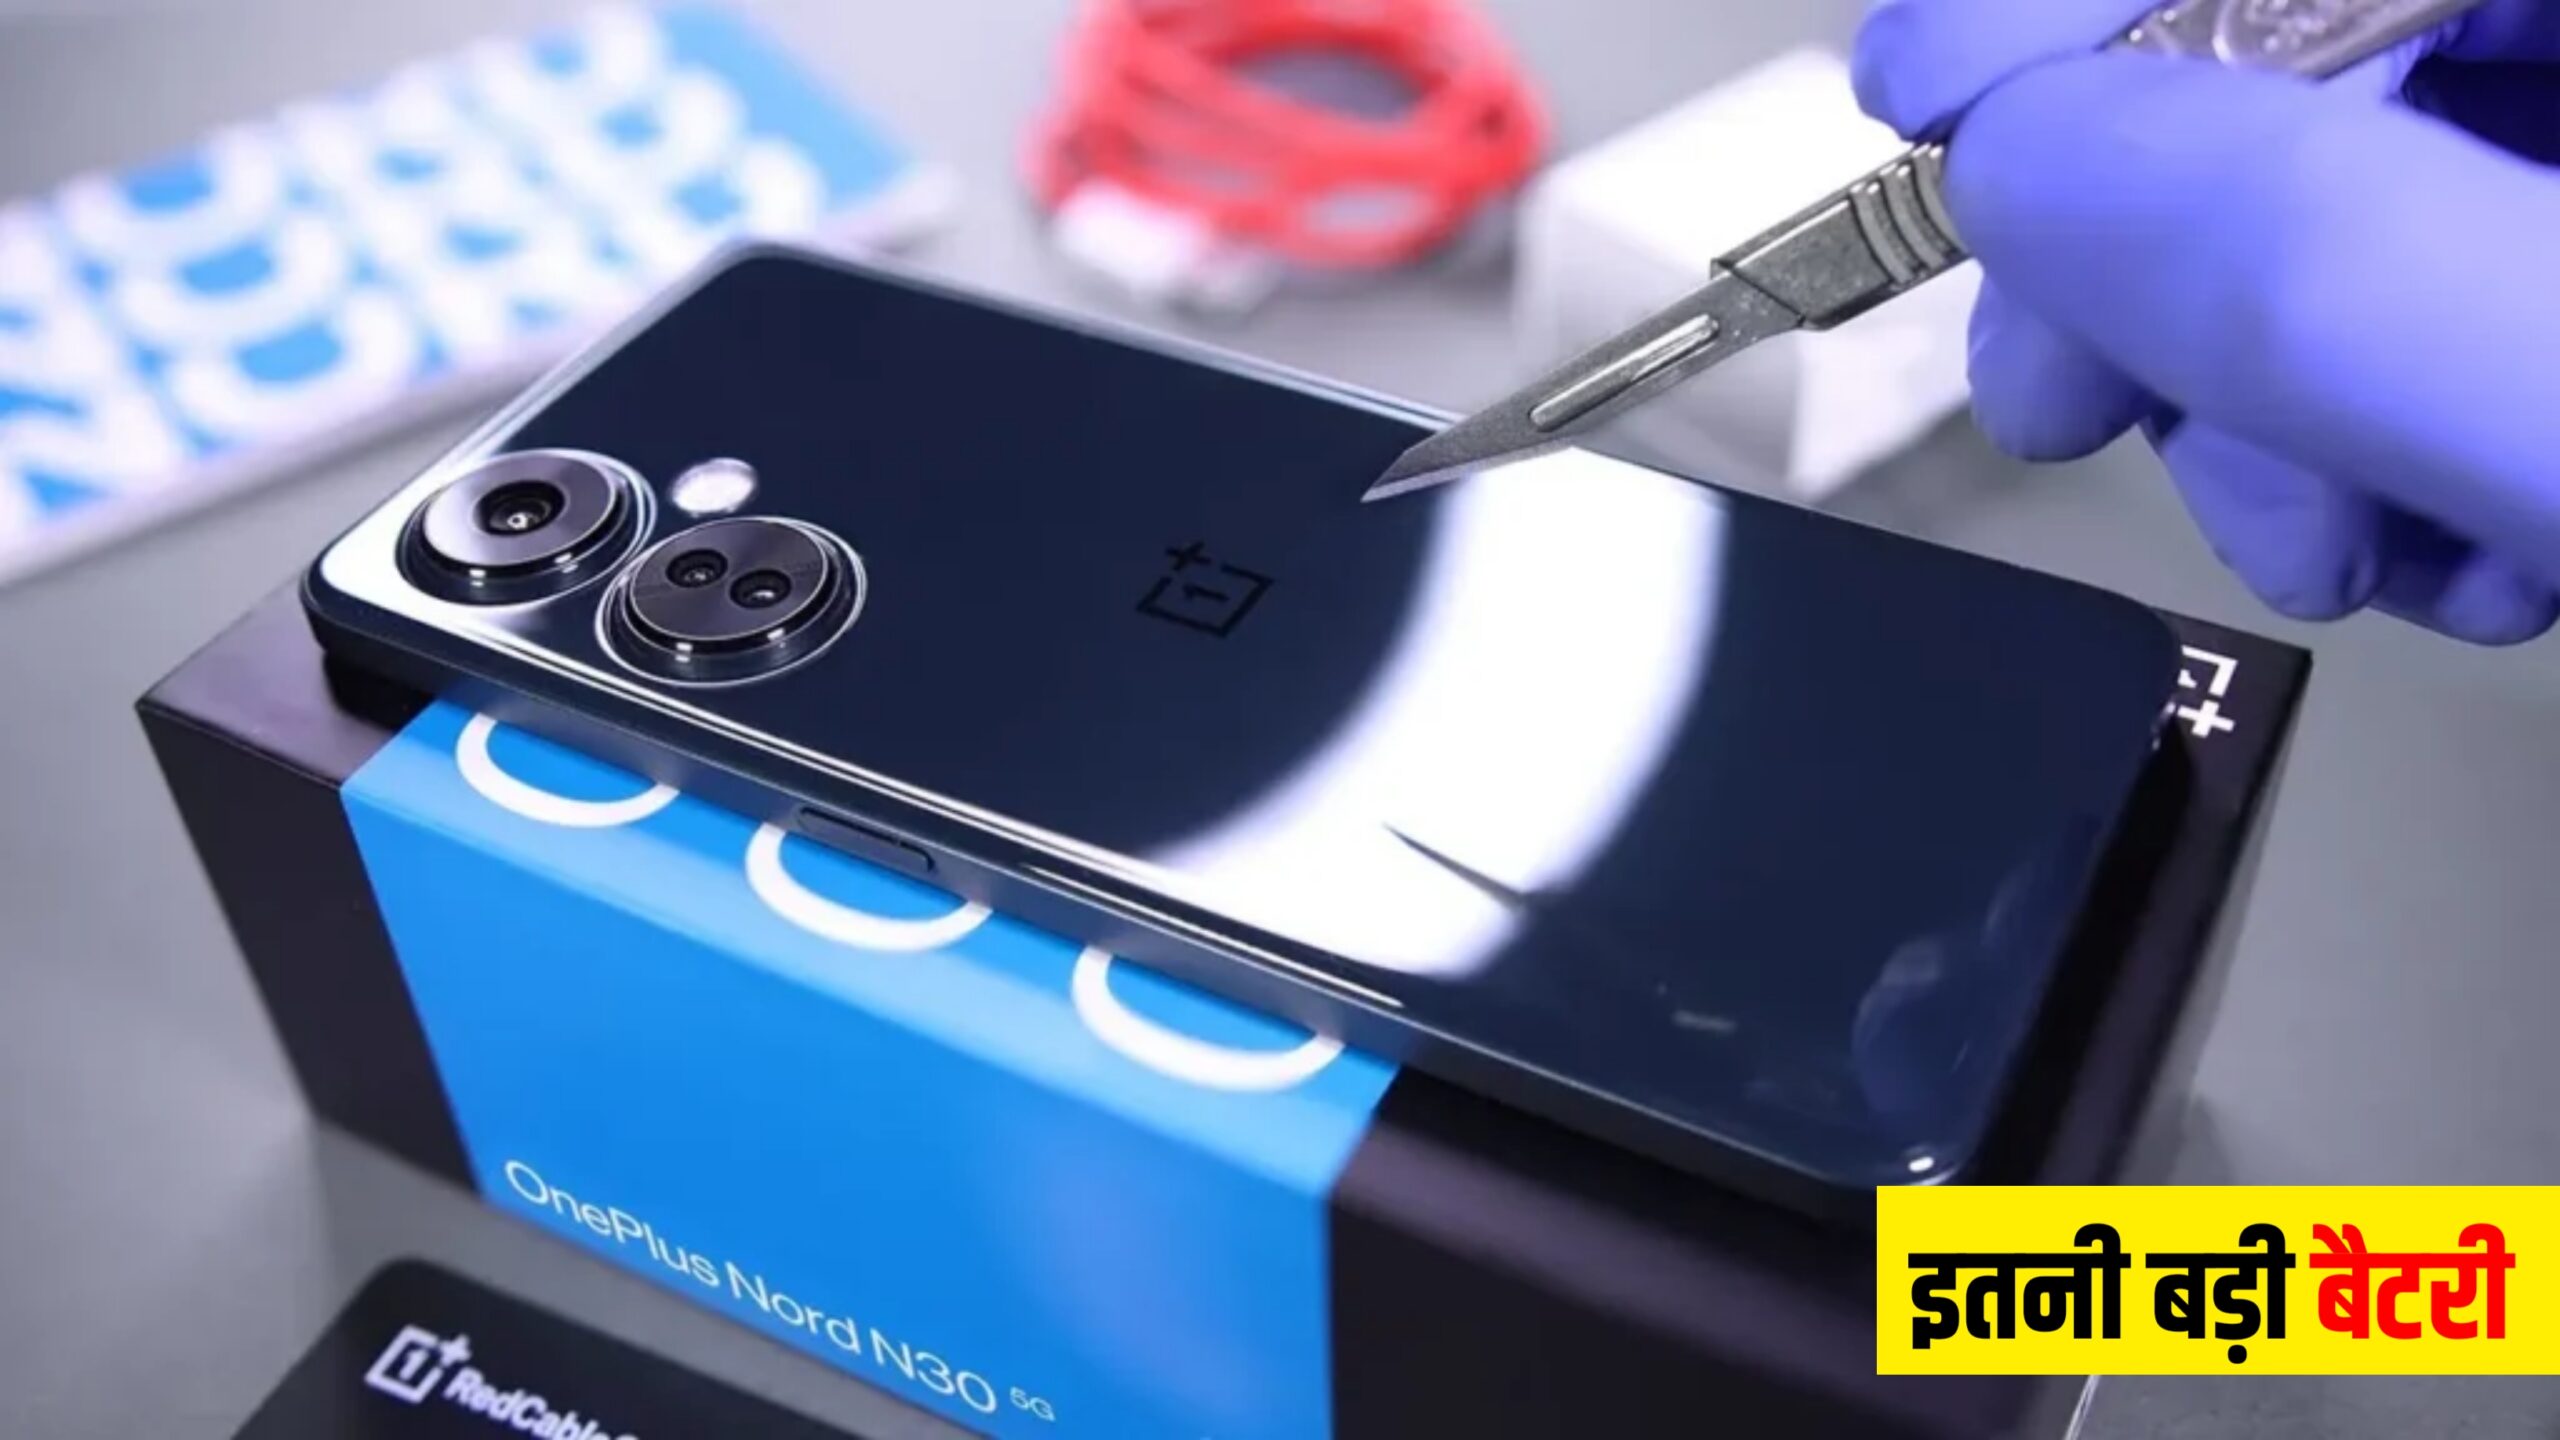 प्रीमियम डिजाईन के साथ आया OnePlus का सबसे सस्ता पतला 5g फोन, 27 मिनट में होगा चार्ज कीमत बस इतनी